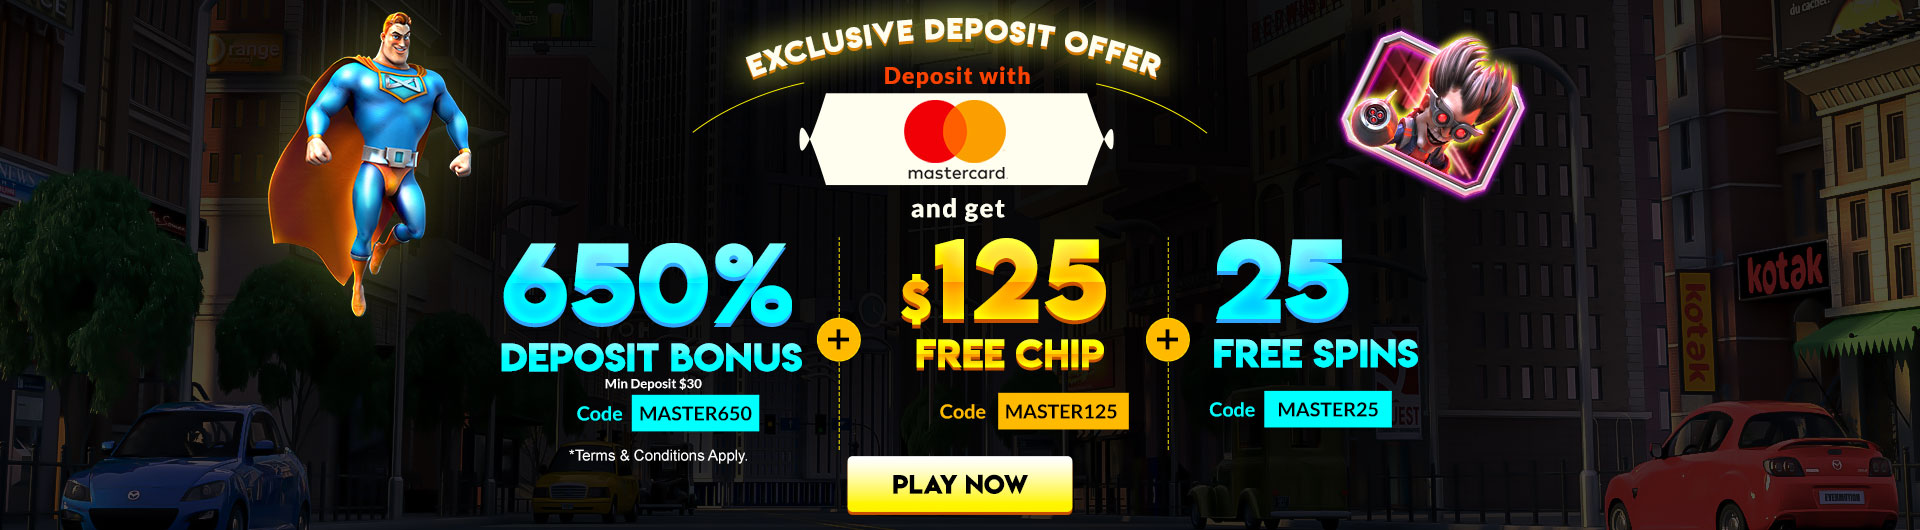 Exclusive Bamboorush Slot Game Bonus with 25 Freechip from Slots 7 Casino